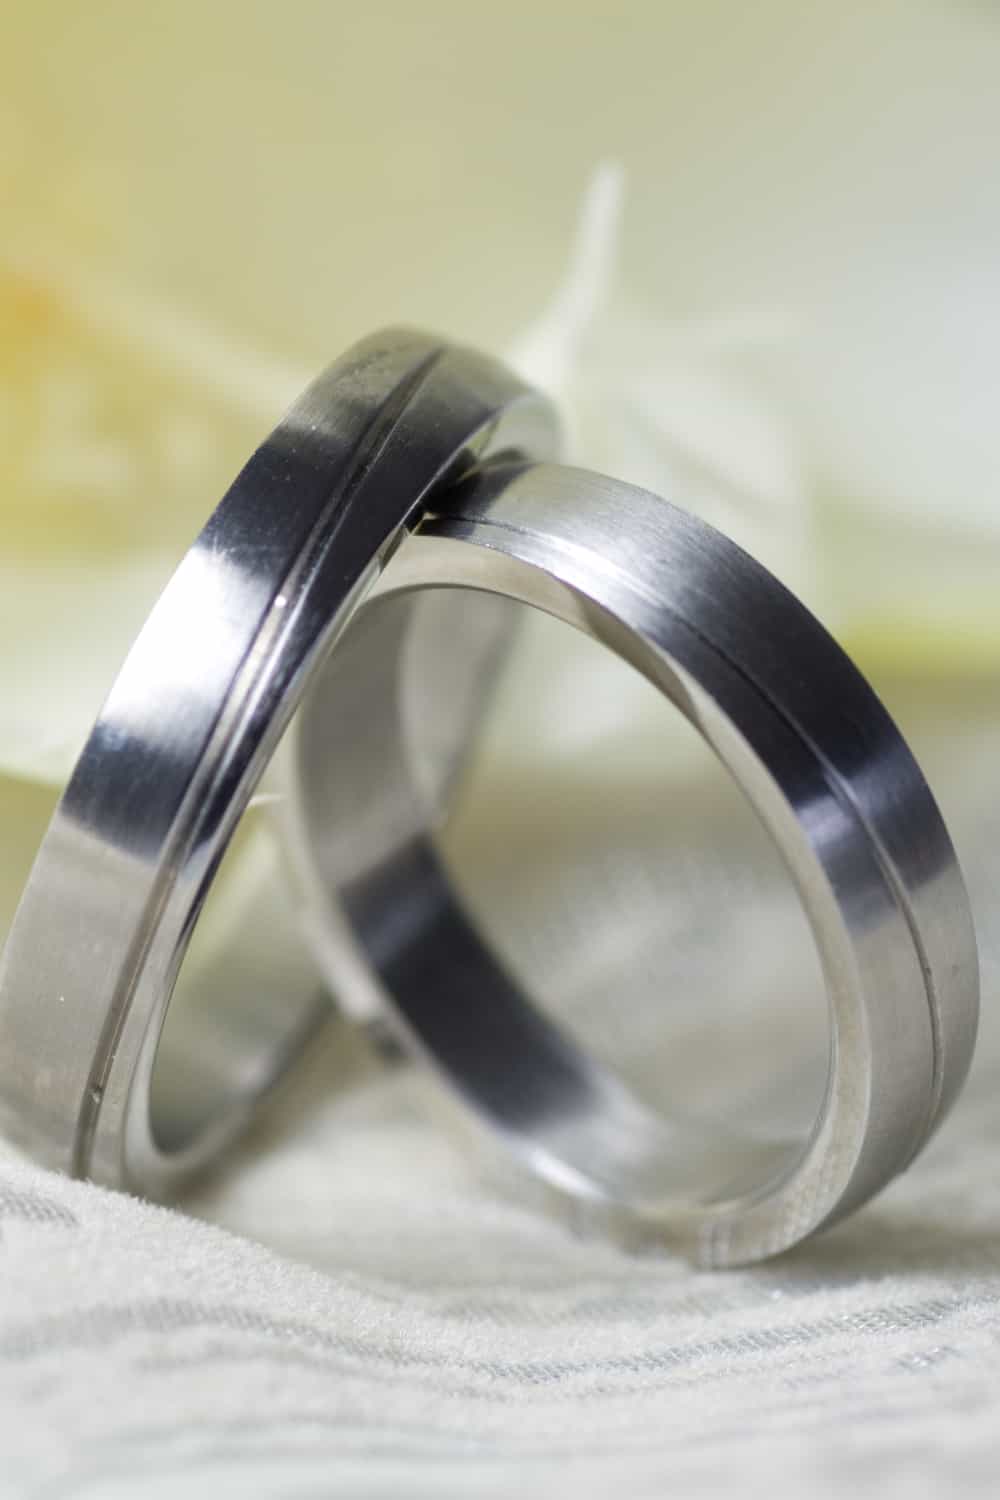 Platinum rings